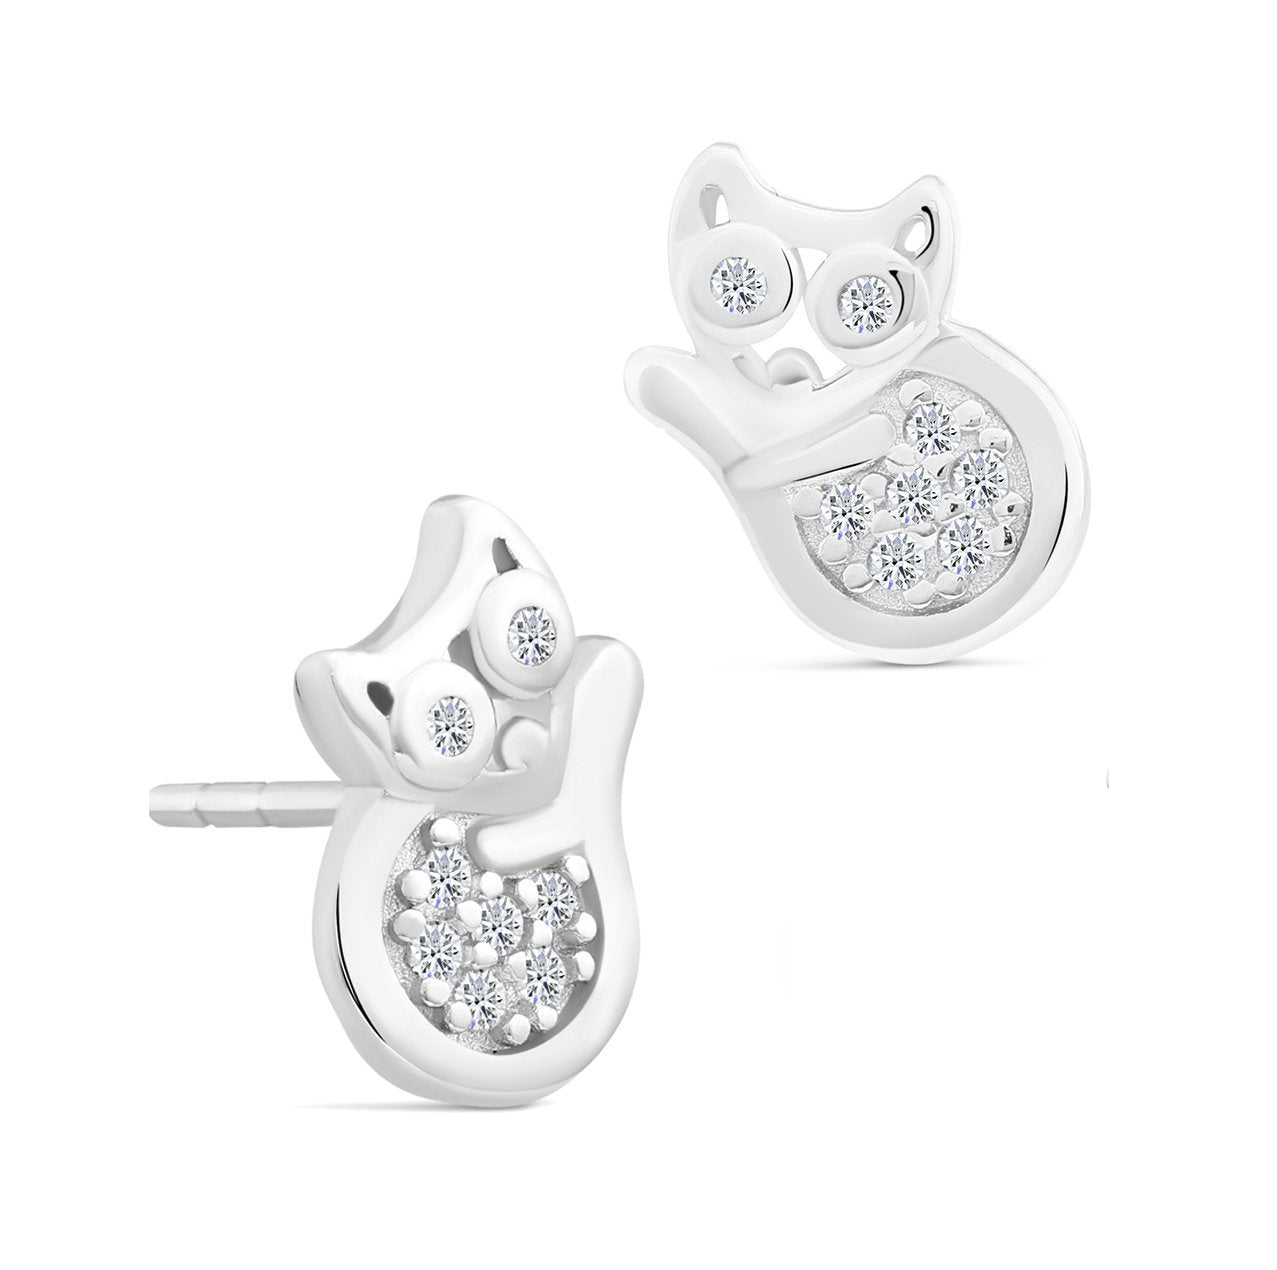 CZ Cat Stud Earrings in Sterling Silver